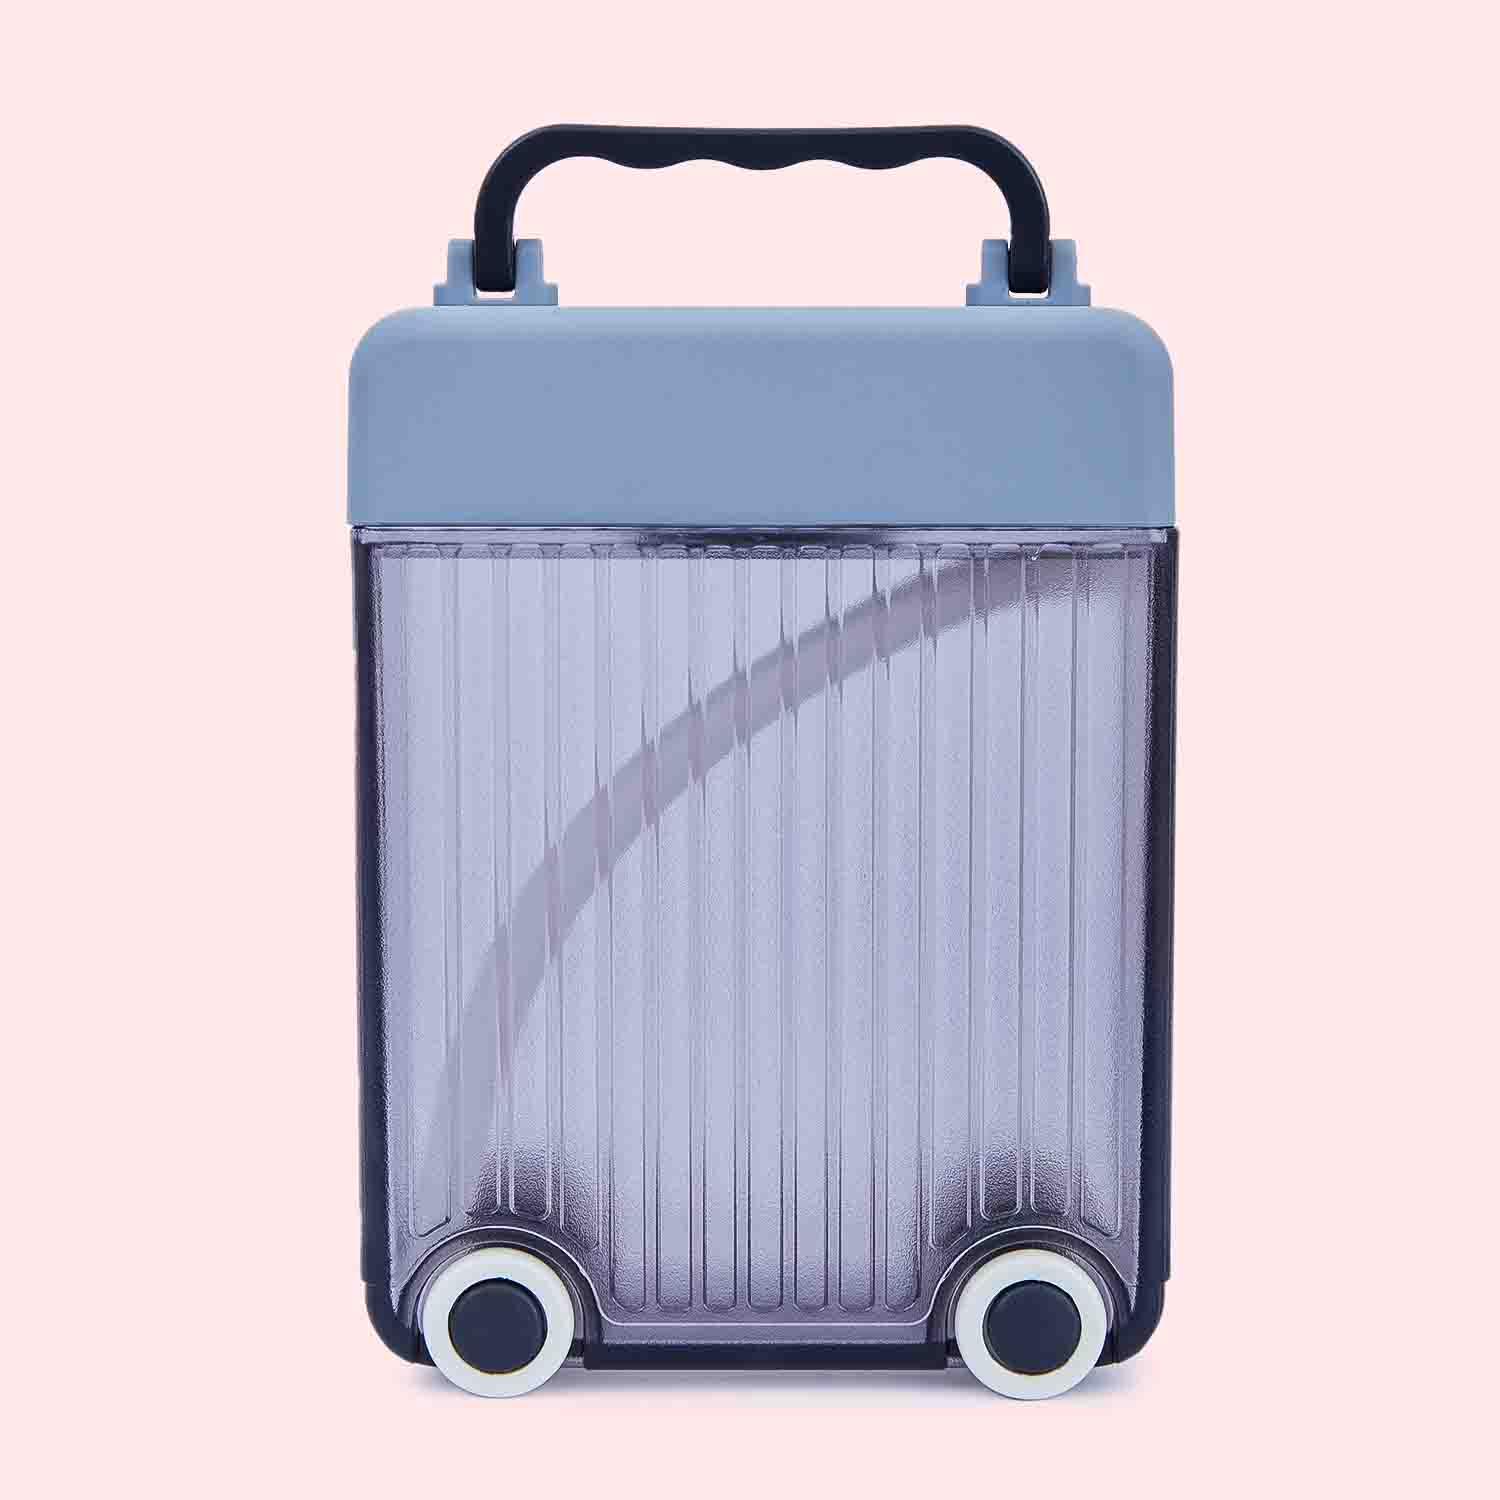 Cute Rolling Suitcase Water bottle - 450ml - Purple